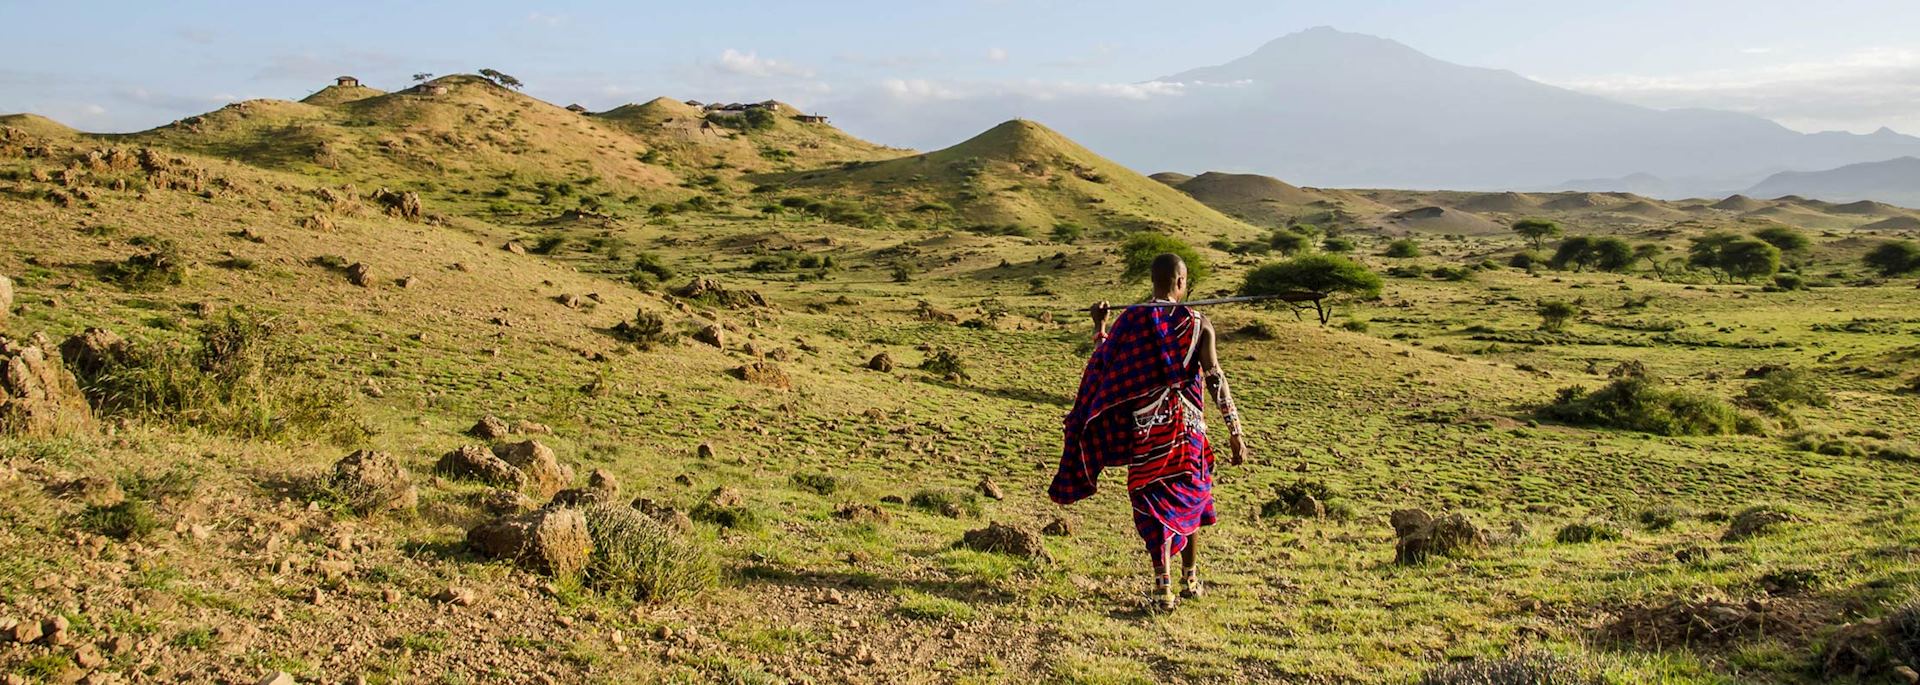 Maasai warrior in the West Kilimanjaro foothills